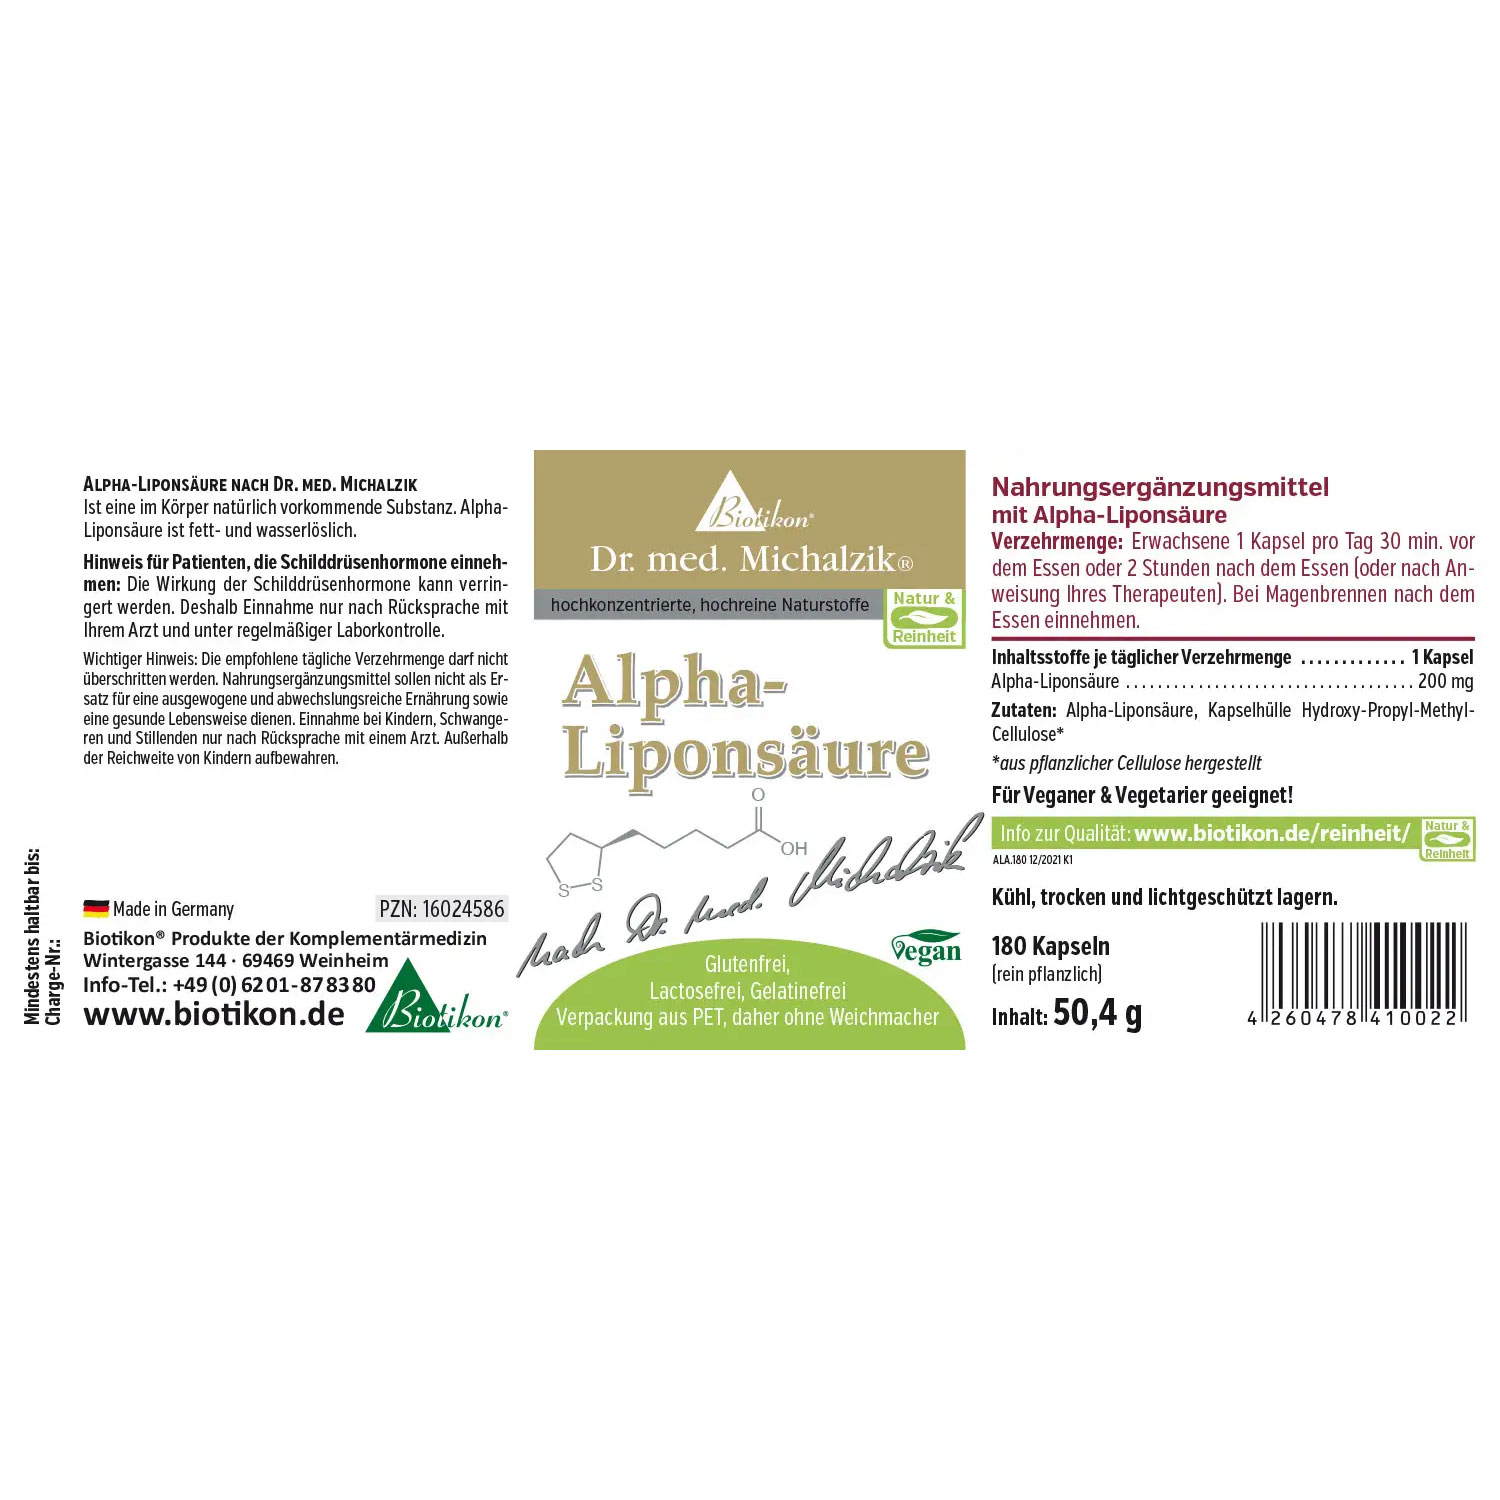 Alpha-Liponsäure von Biotikon - Etikett